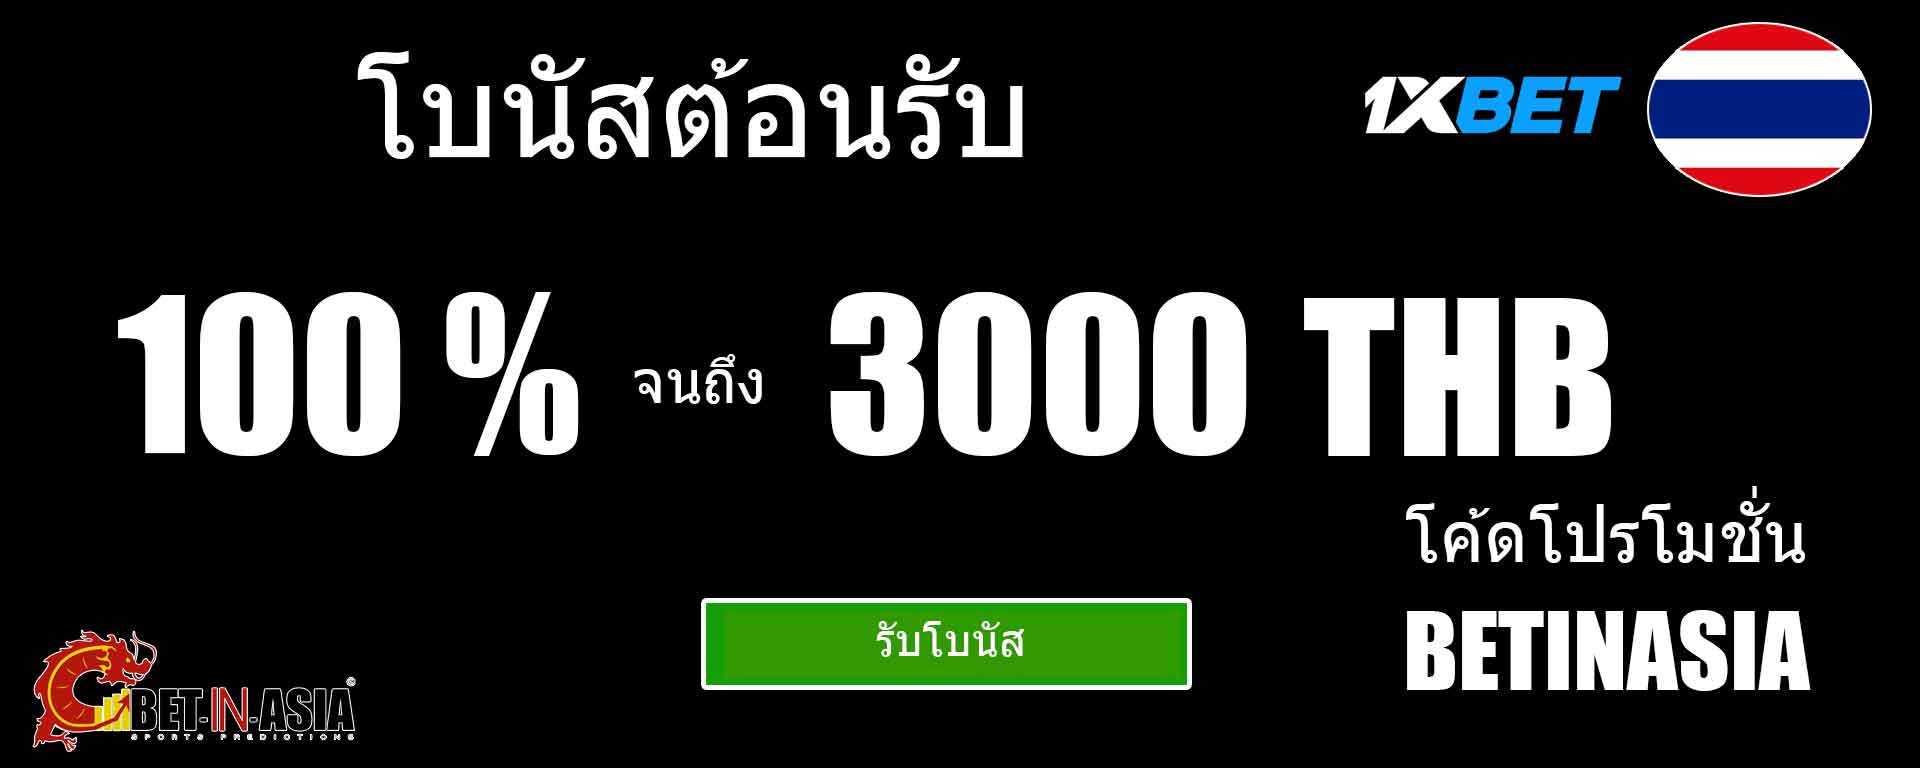 1xbet ประเทศไทยยินดีต้อนรับโบนัส 100% ในการฝากครั้งแรก